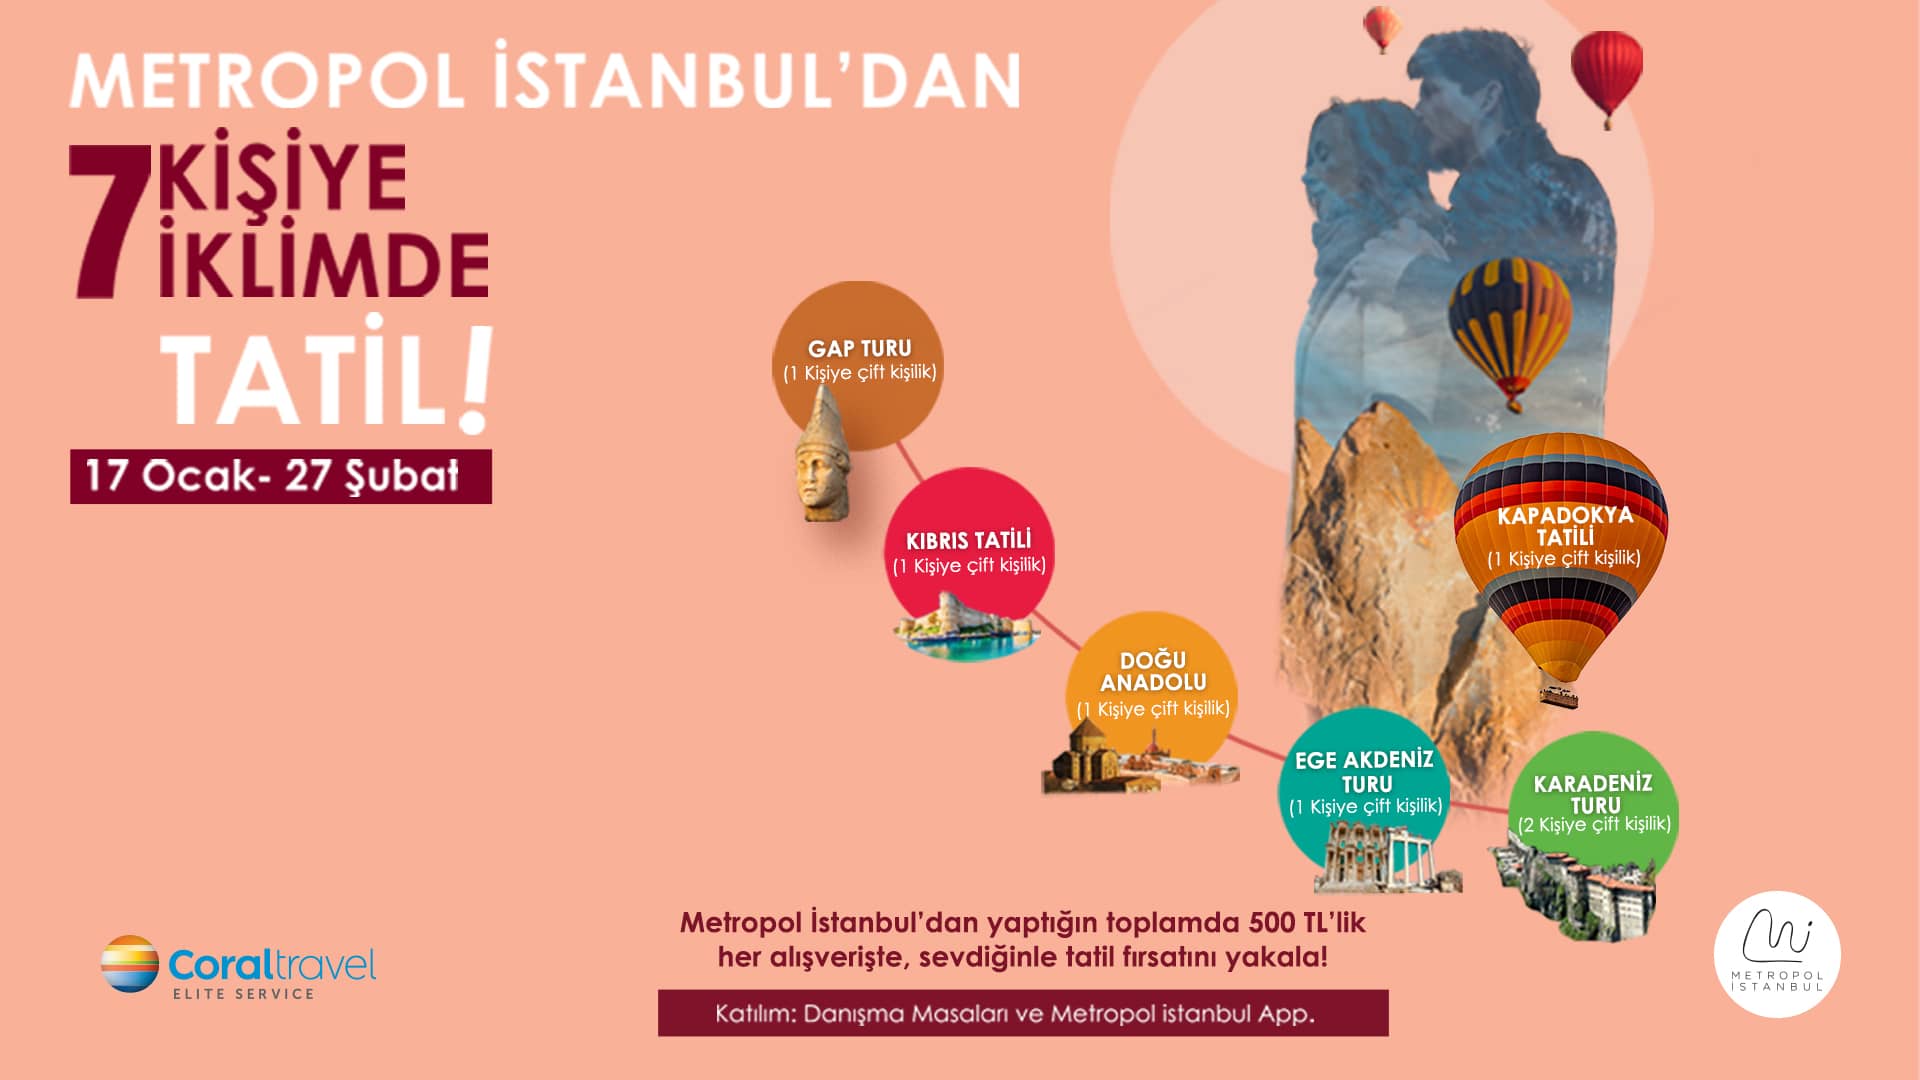 Avrupa’nın en iyi Alışveriş Merkezi Metropol İstanbul’dan 7 kişiye 7 iklimde tatil💕